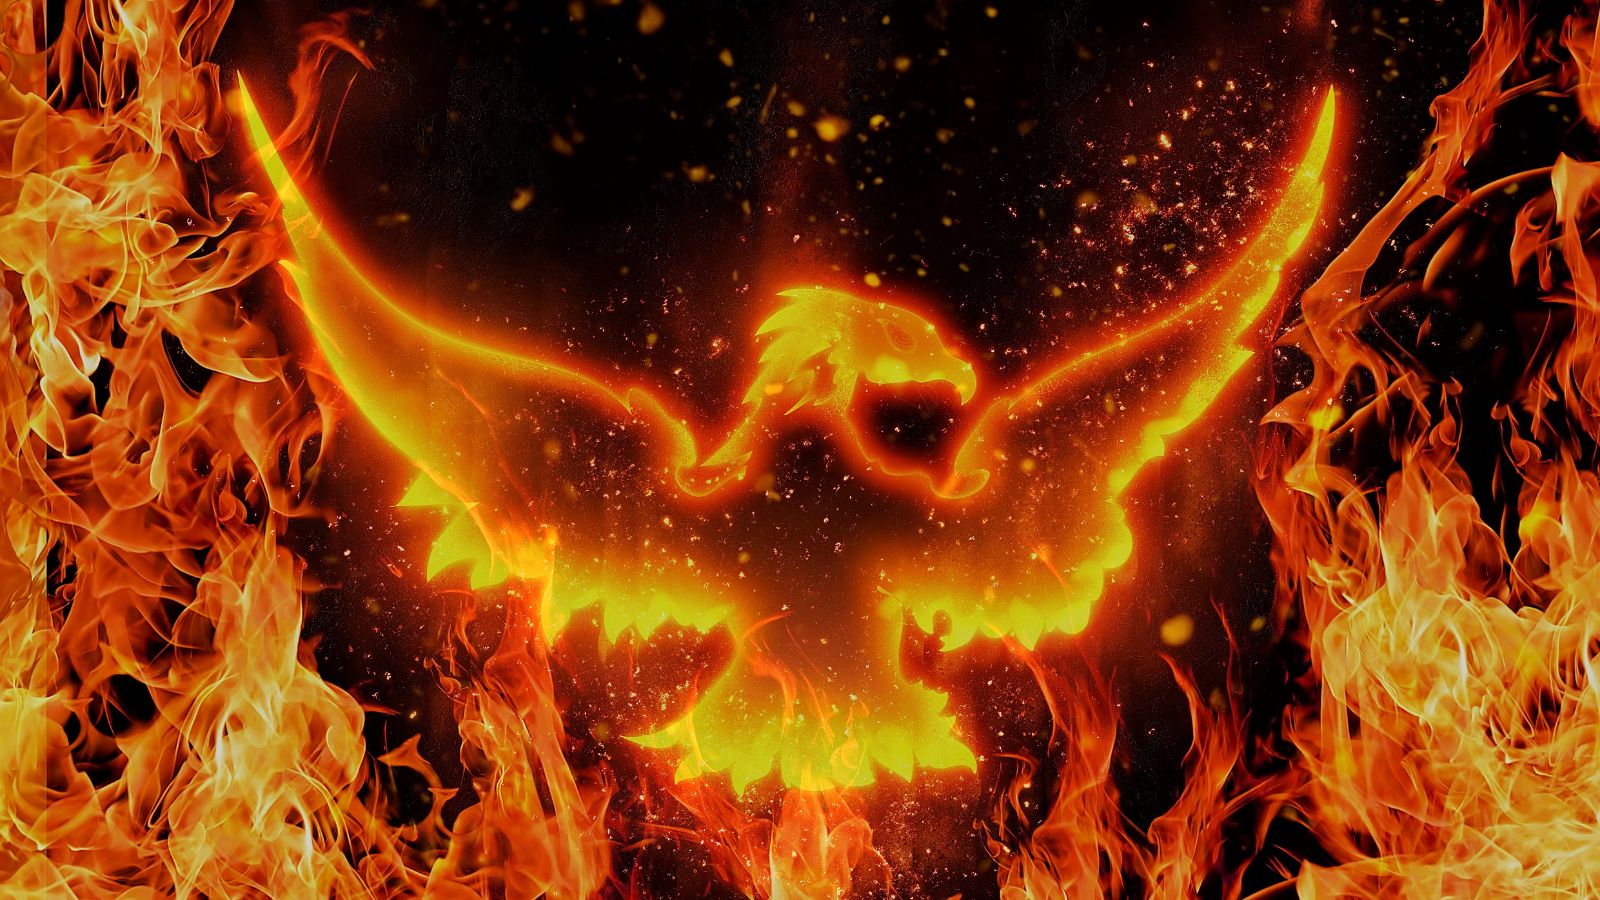 Fire in the shape of a Phoenix